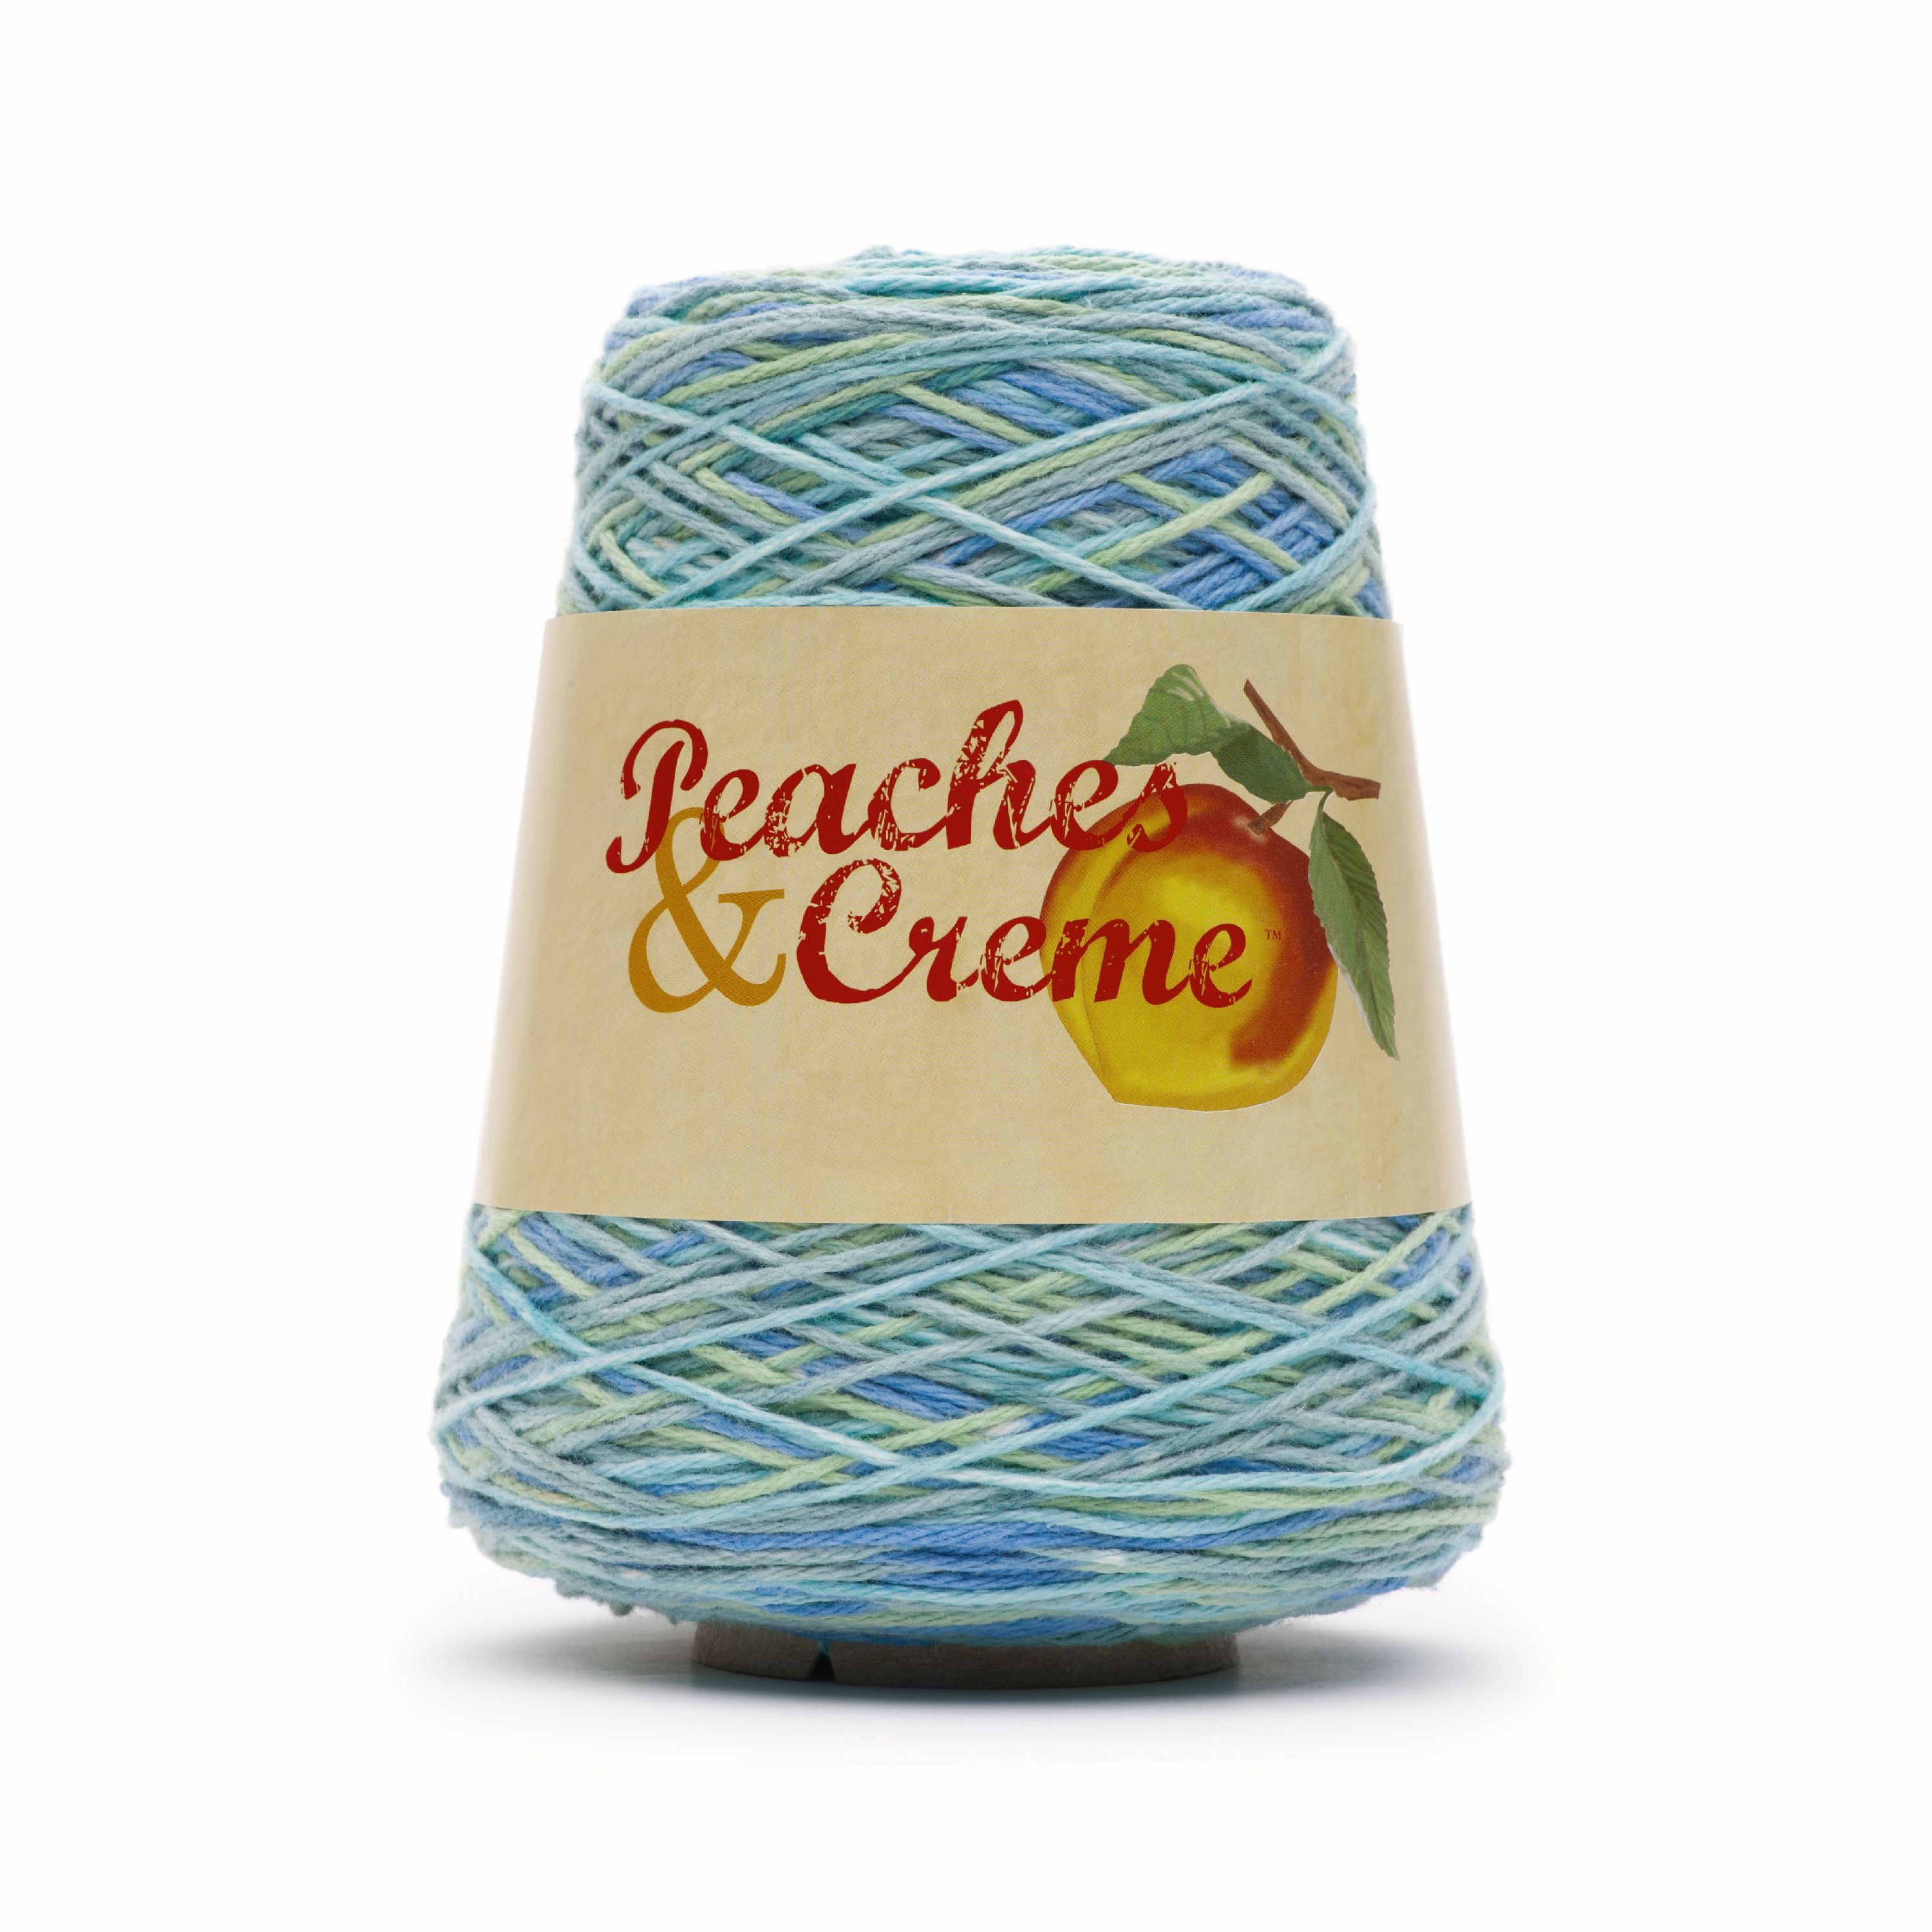 Peaches & Crème Peaches & Creme Cone 4 Medium Cotton Yarn, Ocean Stripes 14oz/400g, 674 Yards